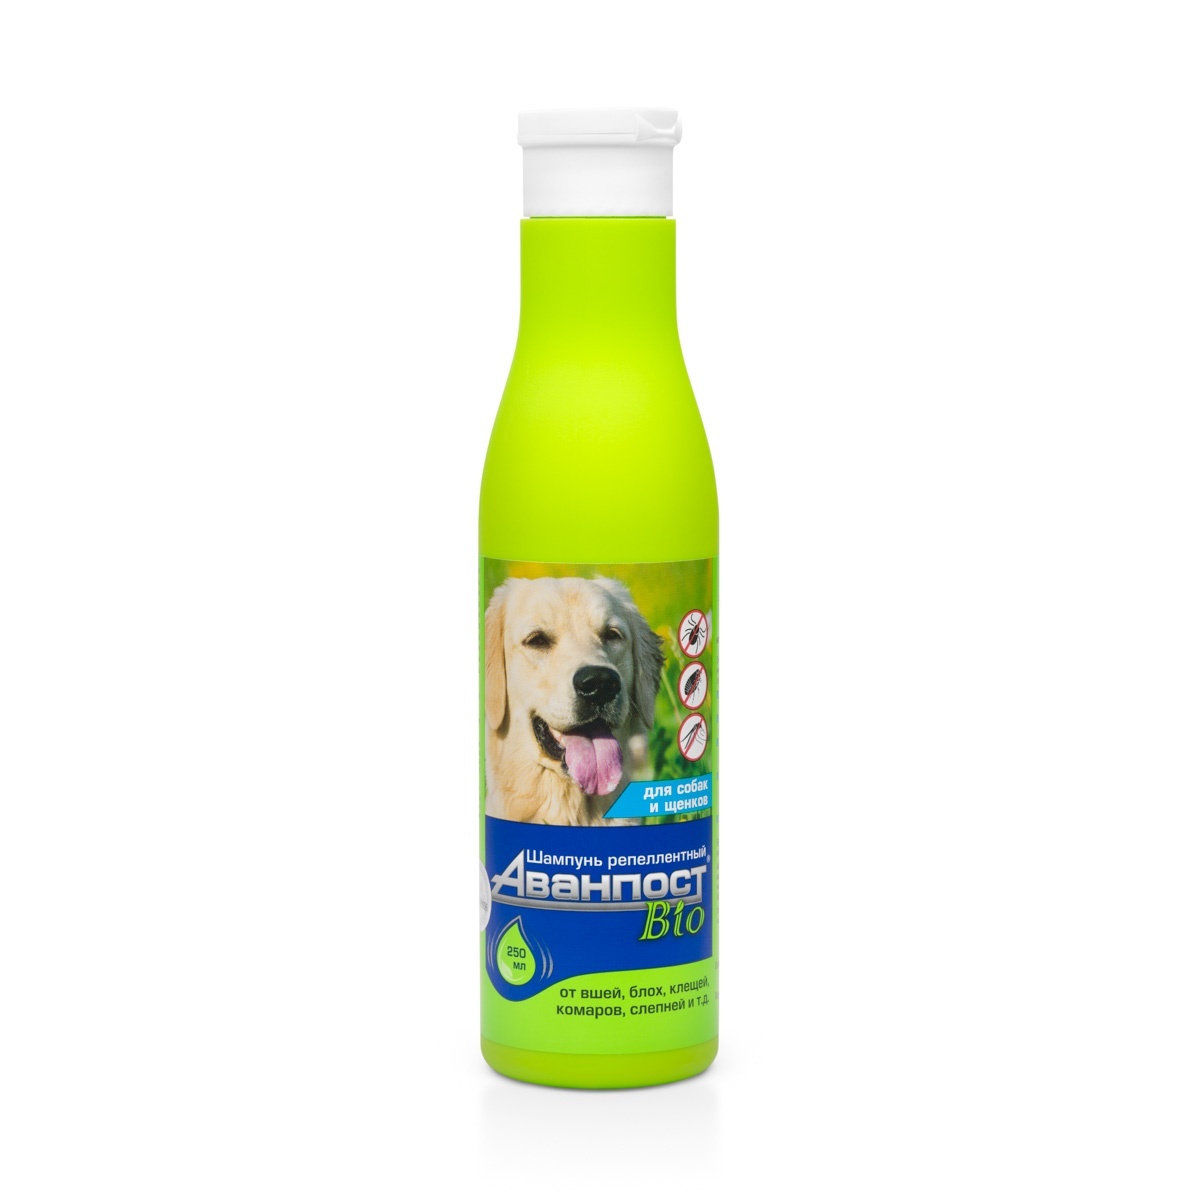 Веда Веда аванпост BIO шампунь репеллентный для собак (250 г) веда веда биоритм витамины для собак малых пород 46 г